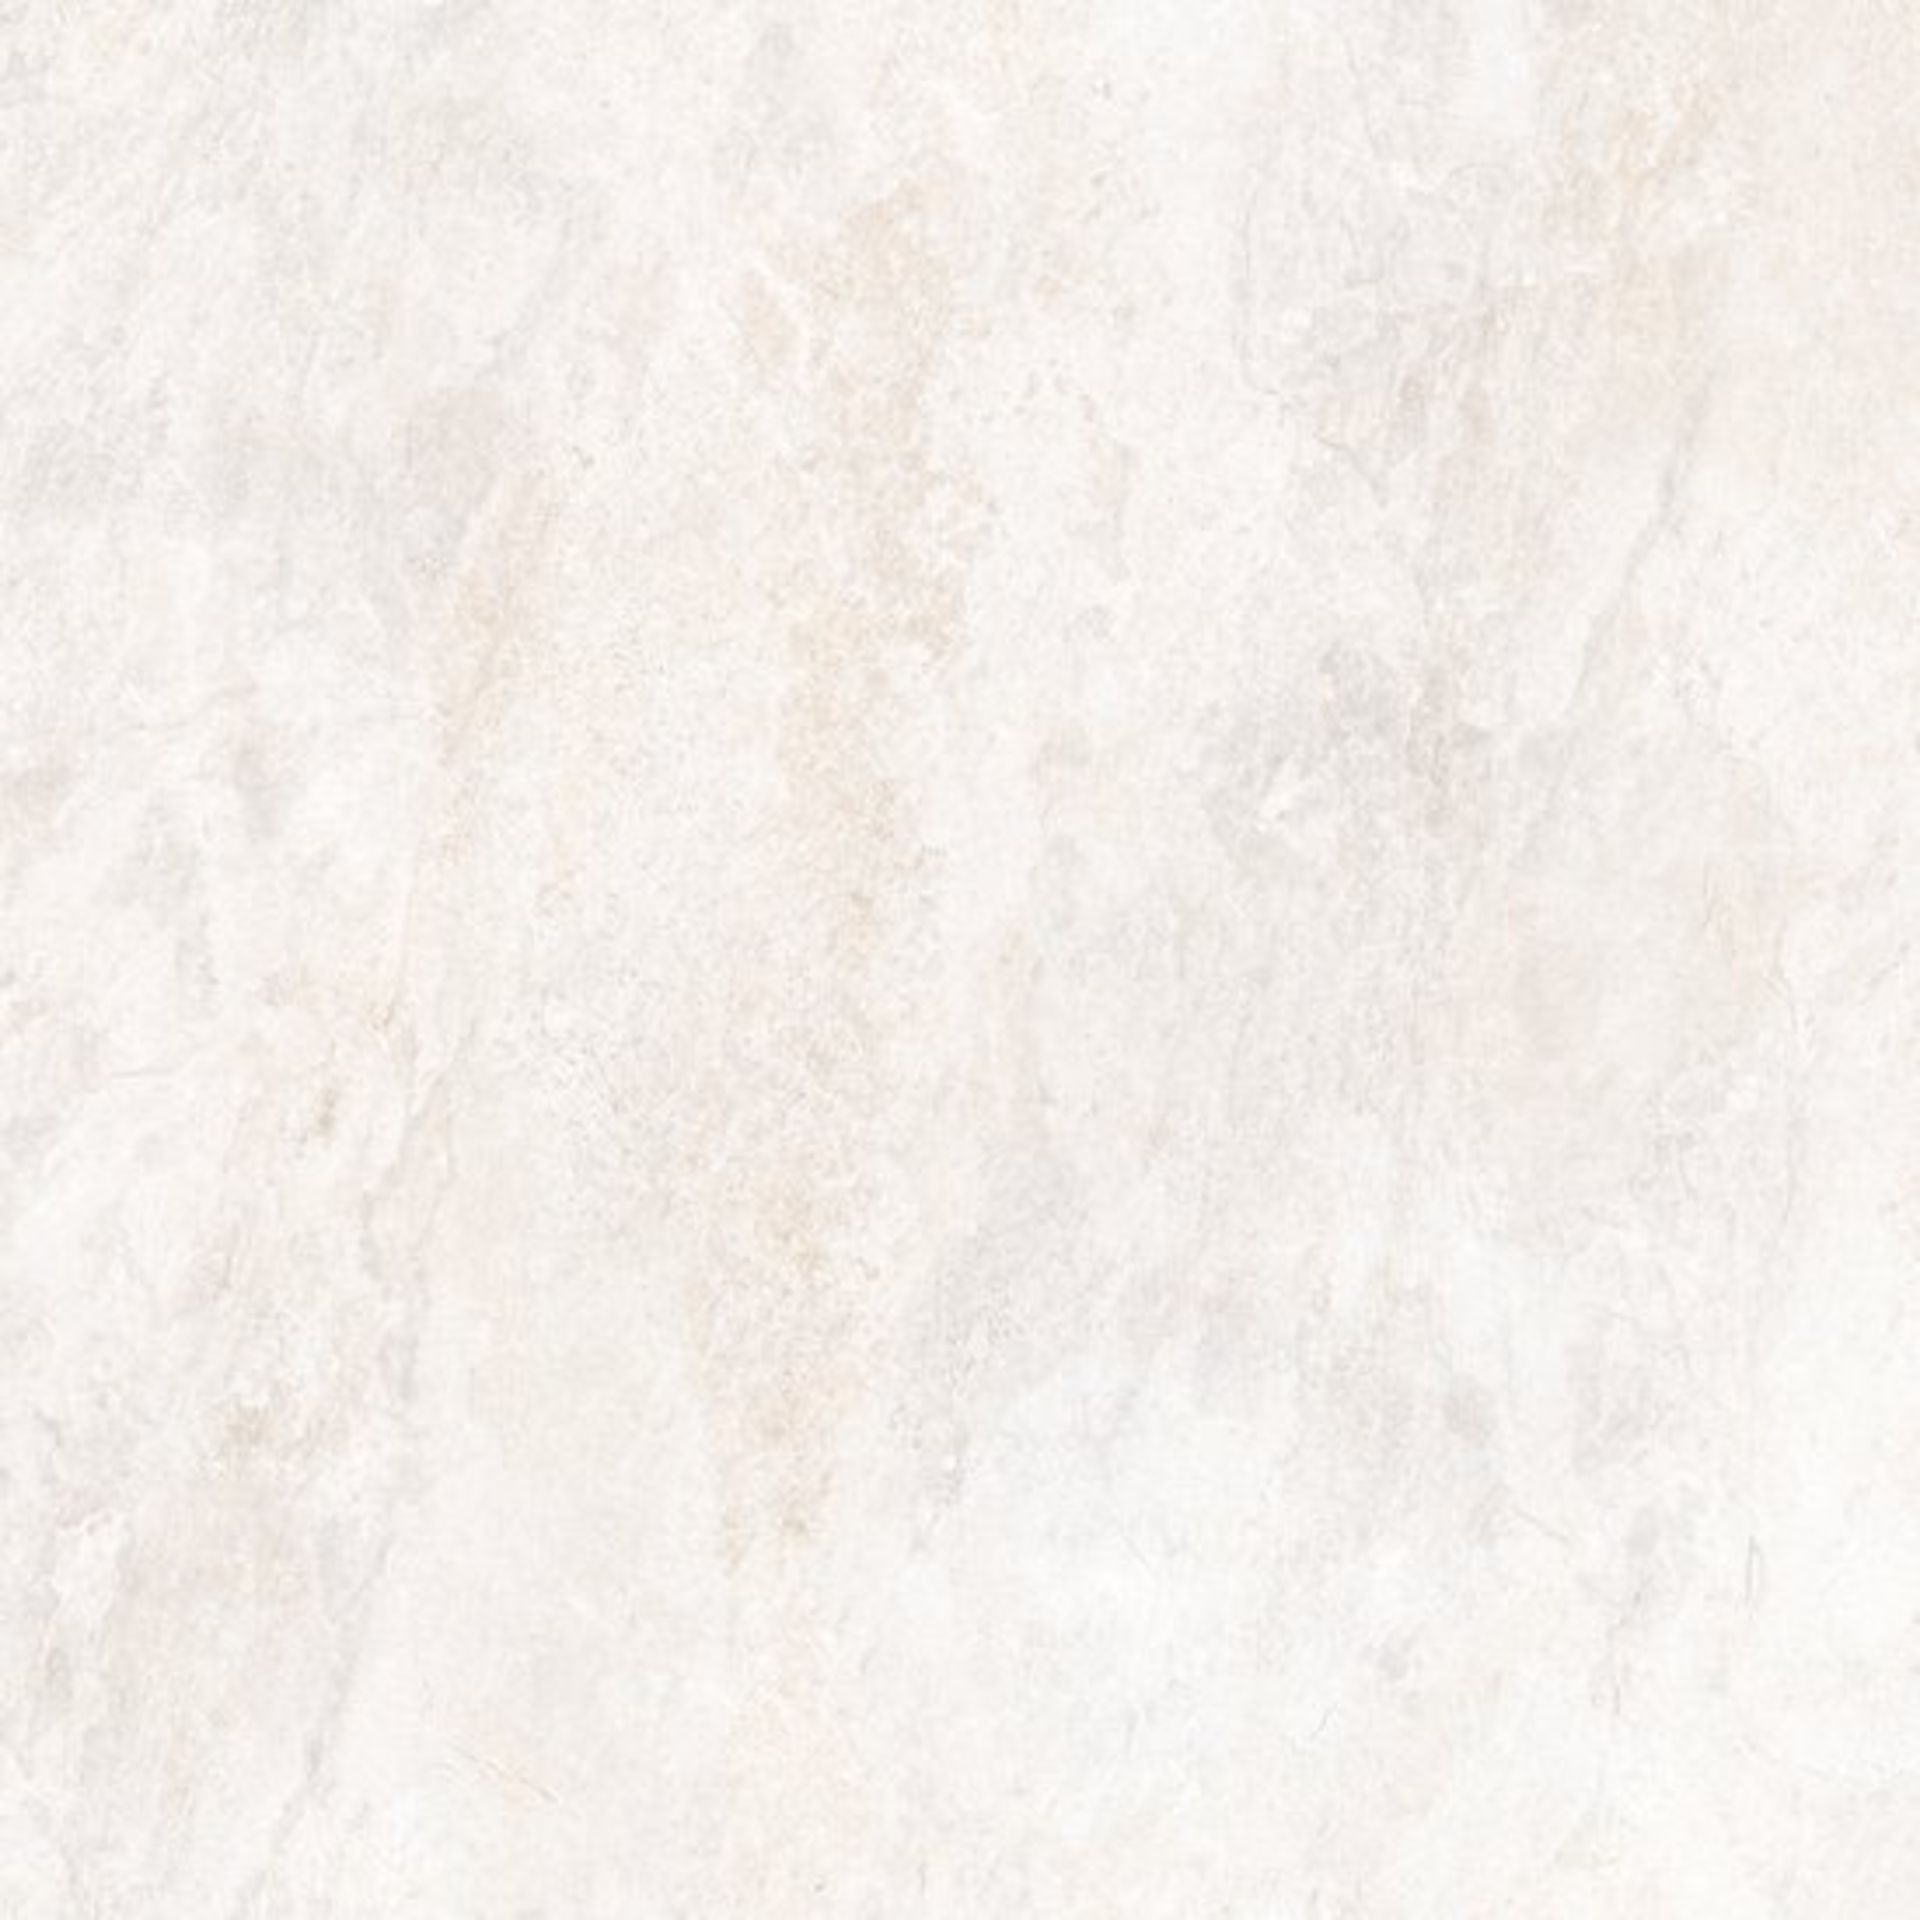 8 X PACKS OF JOHNSONS ARLO SHALE GRIP GLAZED PORCELAIN FLOOR & WALL TILES. (ARL01F) EACH PACK - Image 2 of 2